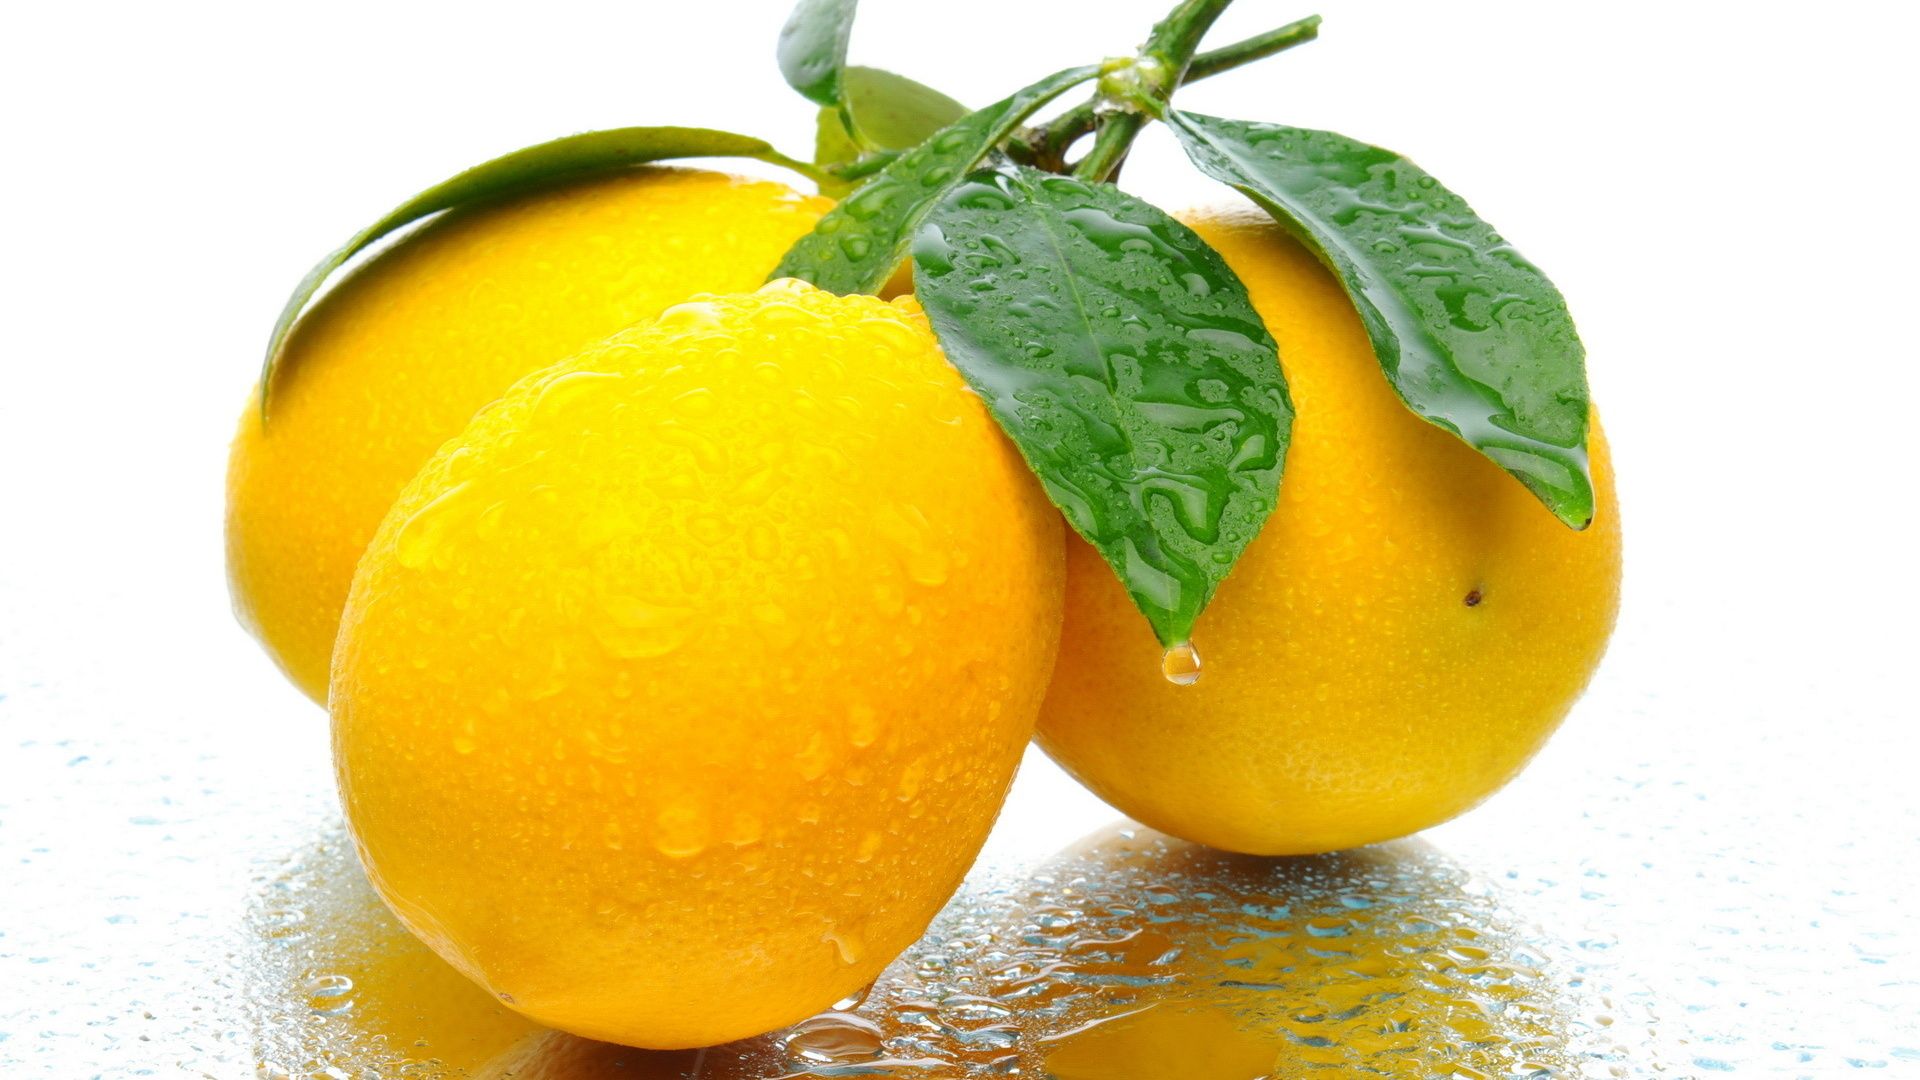 lemon wallpaper hd,natural foods,fruit,food,yellow,plant